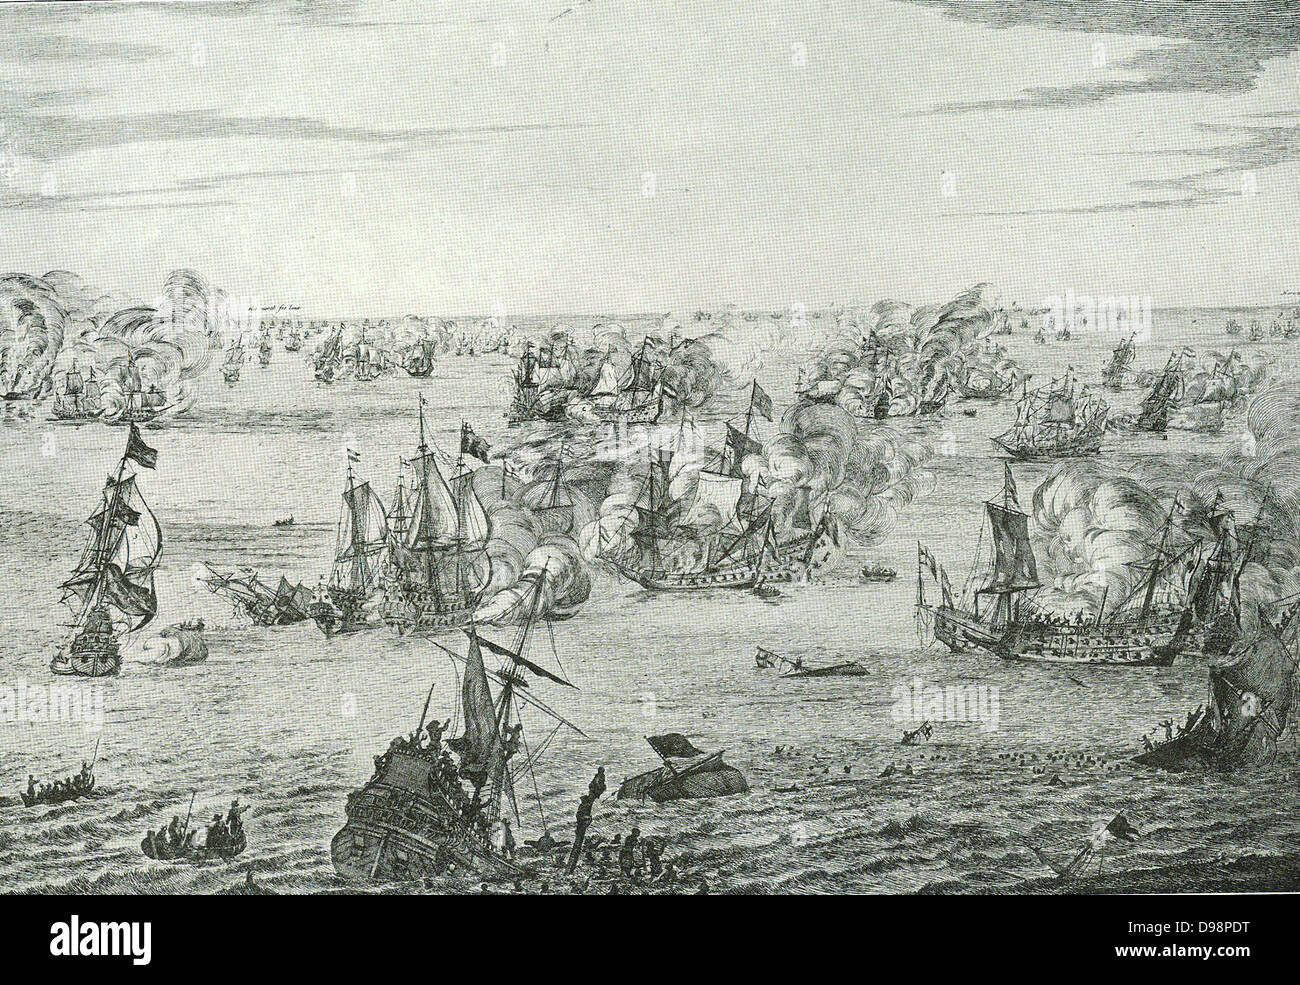 Die Seeschlacht von Norden Forelant, 11.-14. Juni, 1666. Während des Zweiten Krieges zwischen England und den Niederlanden für die Herrschaft über das Meer, eine der am meisten blutige Schlachten, die Geschichte weiß von gekämpft wurde North Foreland. Der Kampf dauerte vier Tage, mit beiden Parteien behauptet, Sieg. Stockfoto